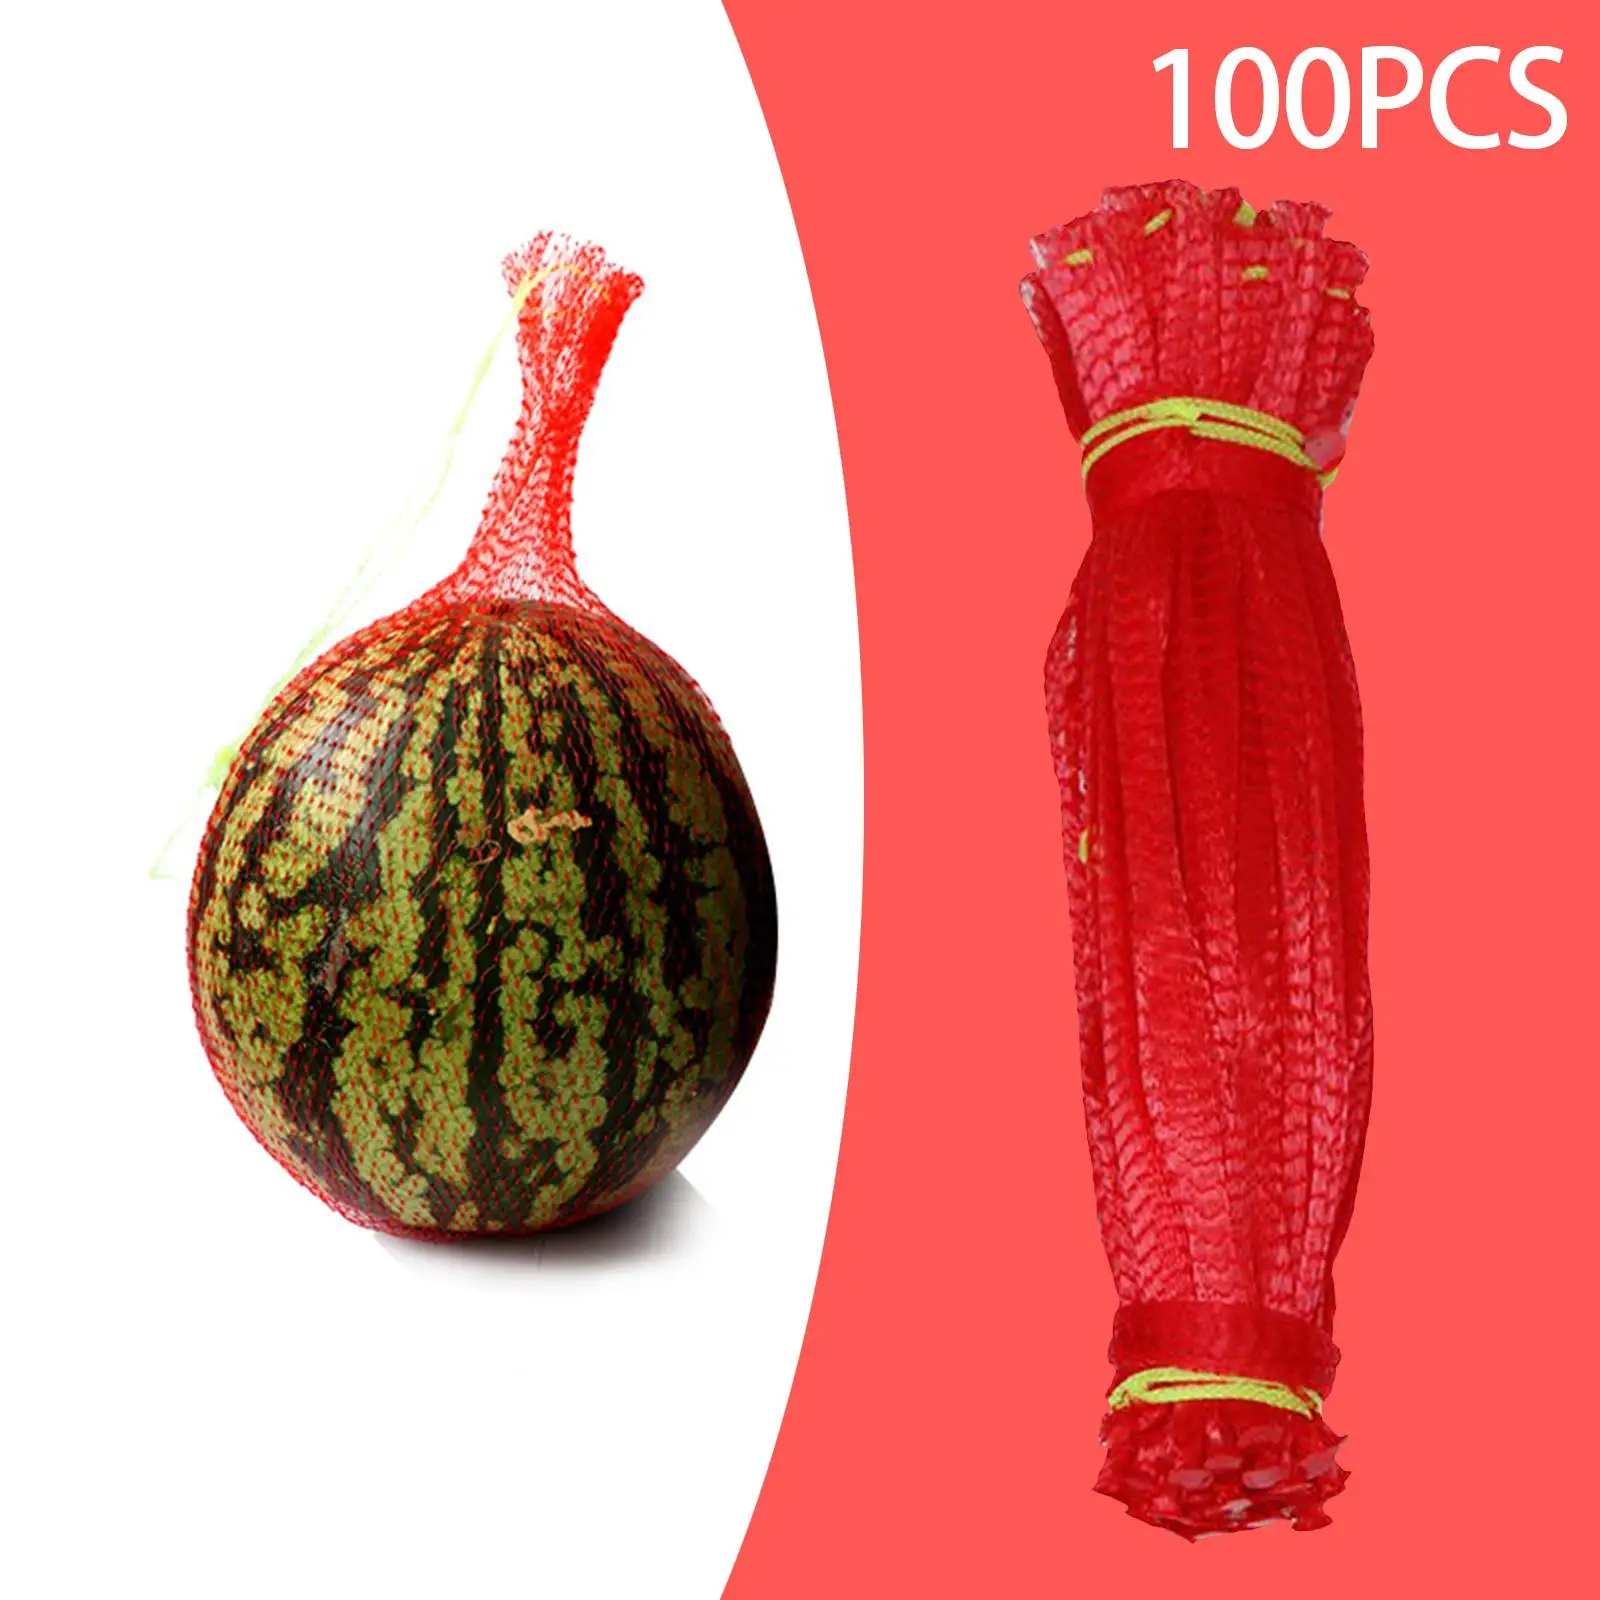 100Pcs Thicken Melon Nets Reusable Cantaloupes Mesh Net Hammocks Hanging Watermelon Net Bags for Honeydew Melon Cucumbers Garden